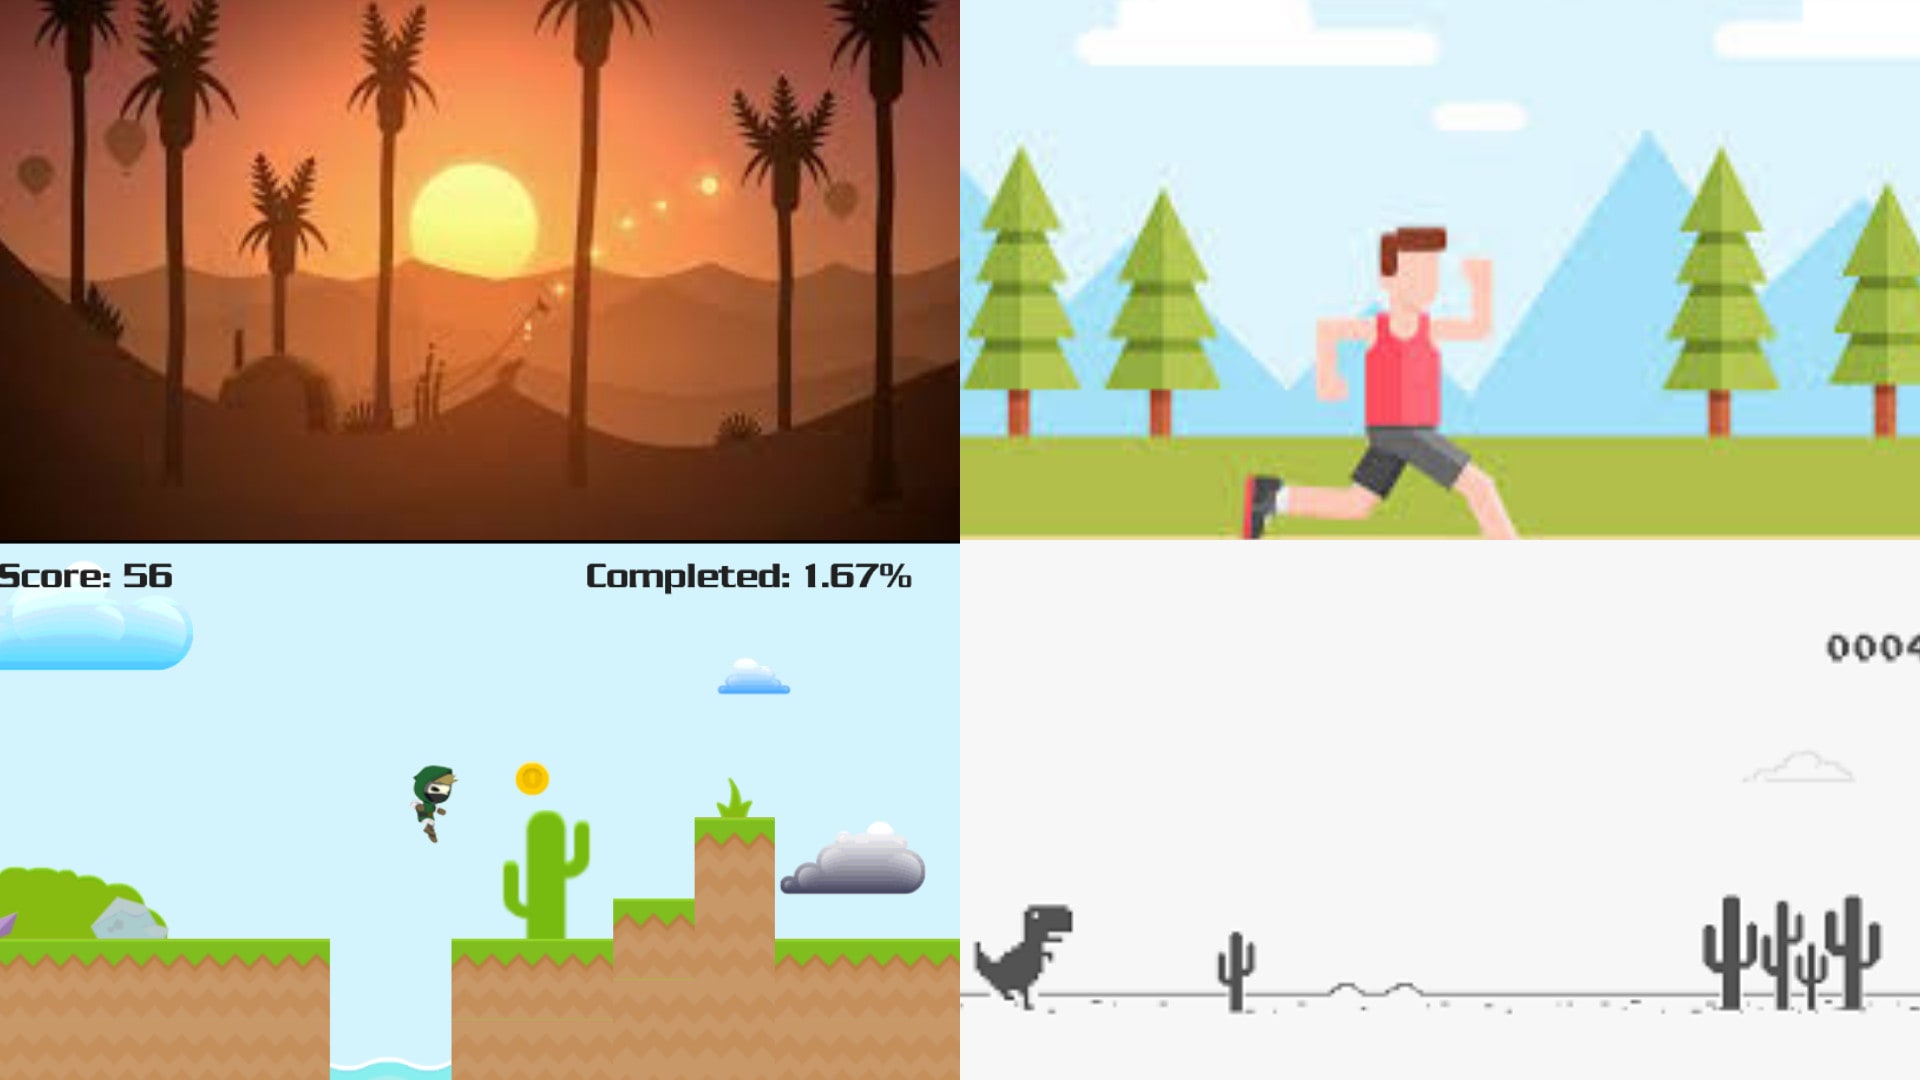 GitHub - faridfr45/2D-Endless-Runner: 2D Endless Runner Game